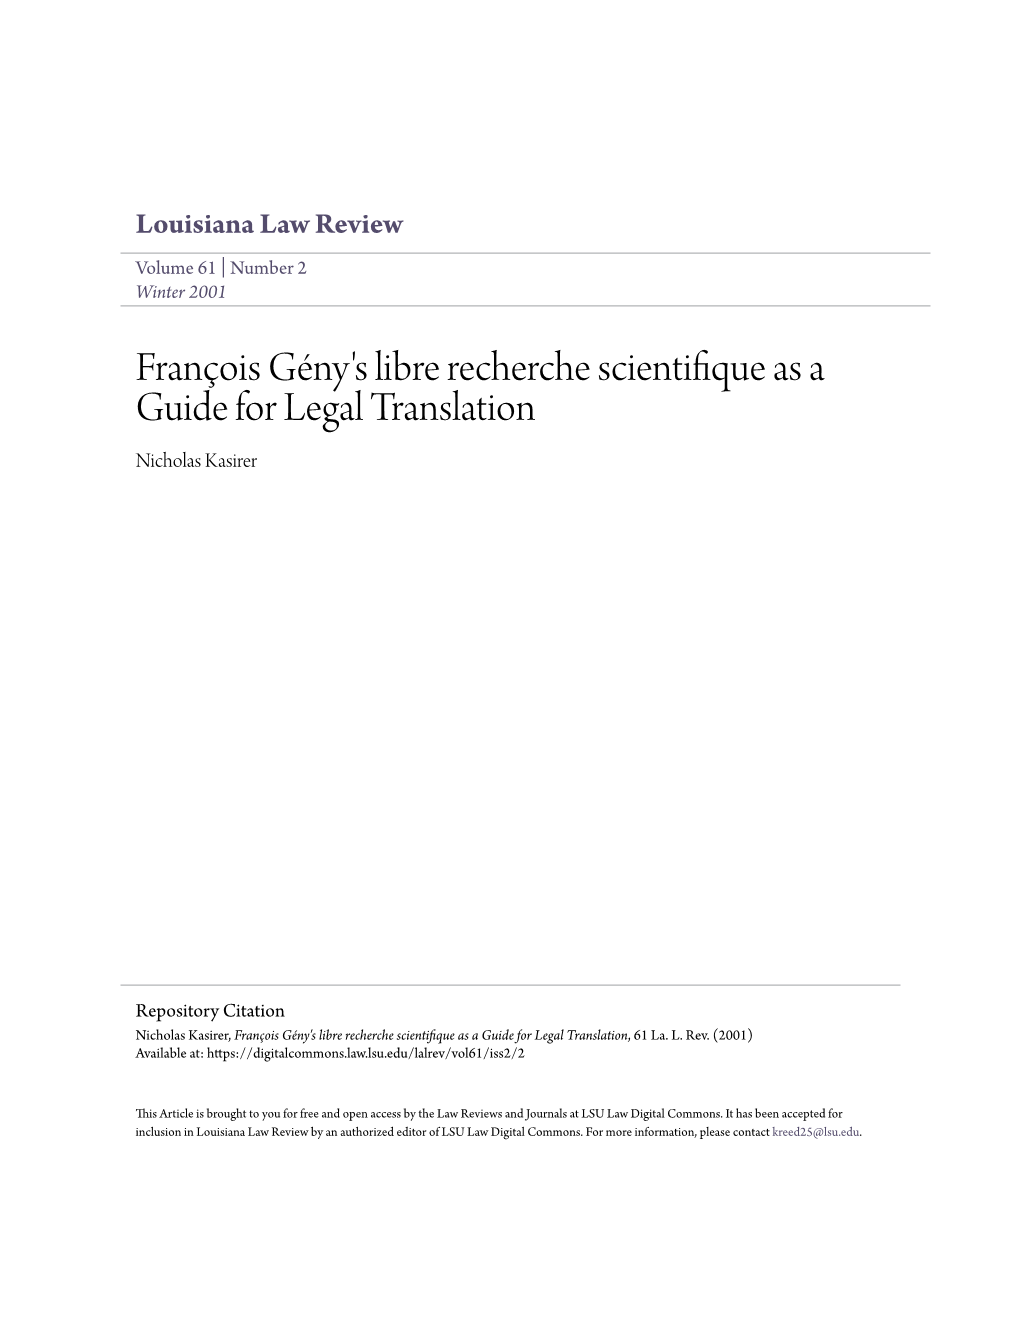 François Gény's Libre Recherche Scientifique As a Guide for Legal Translation, 61 La